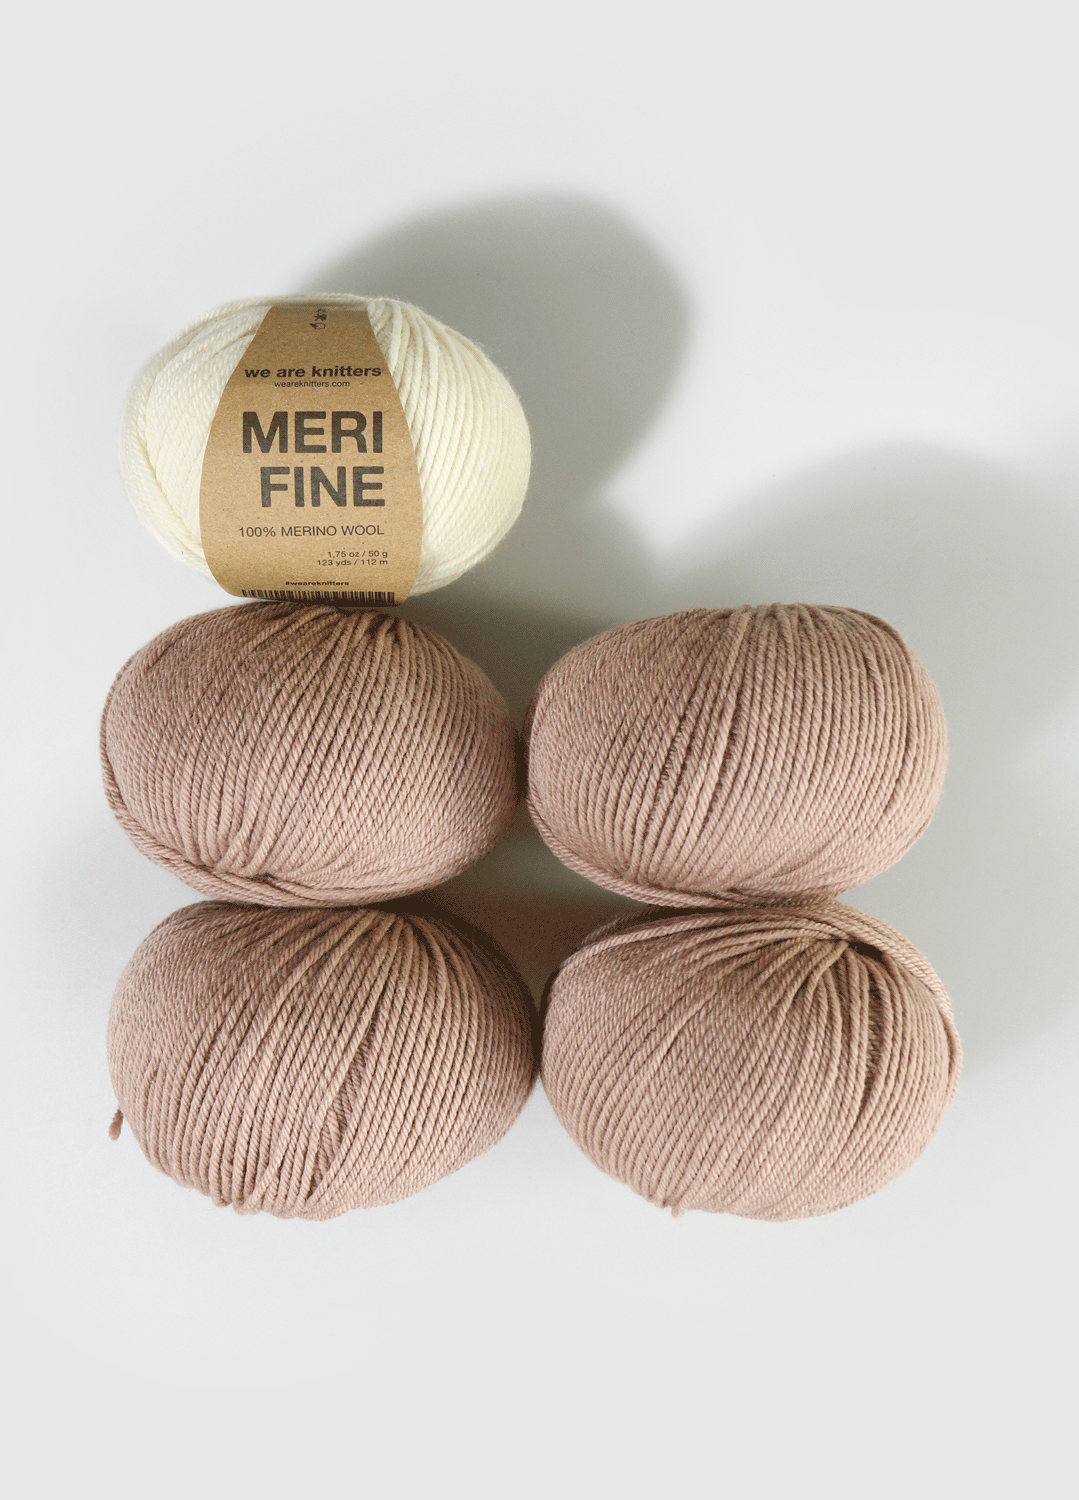 5 Pack of Merifine Yarn Balls